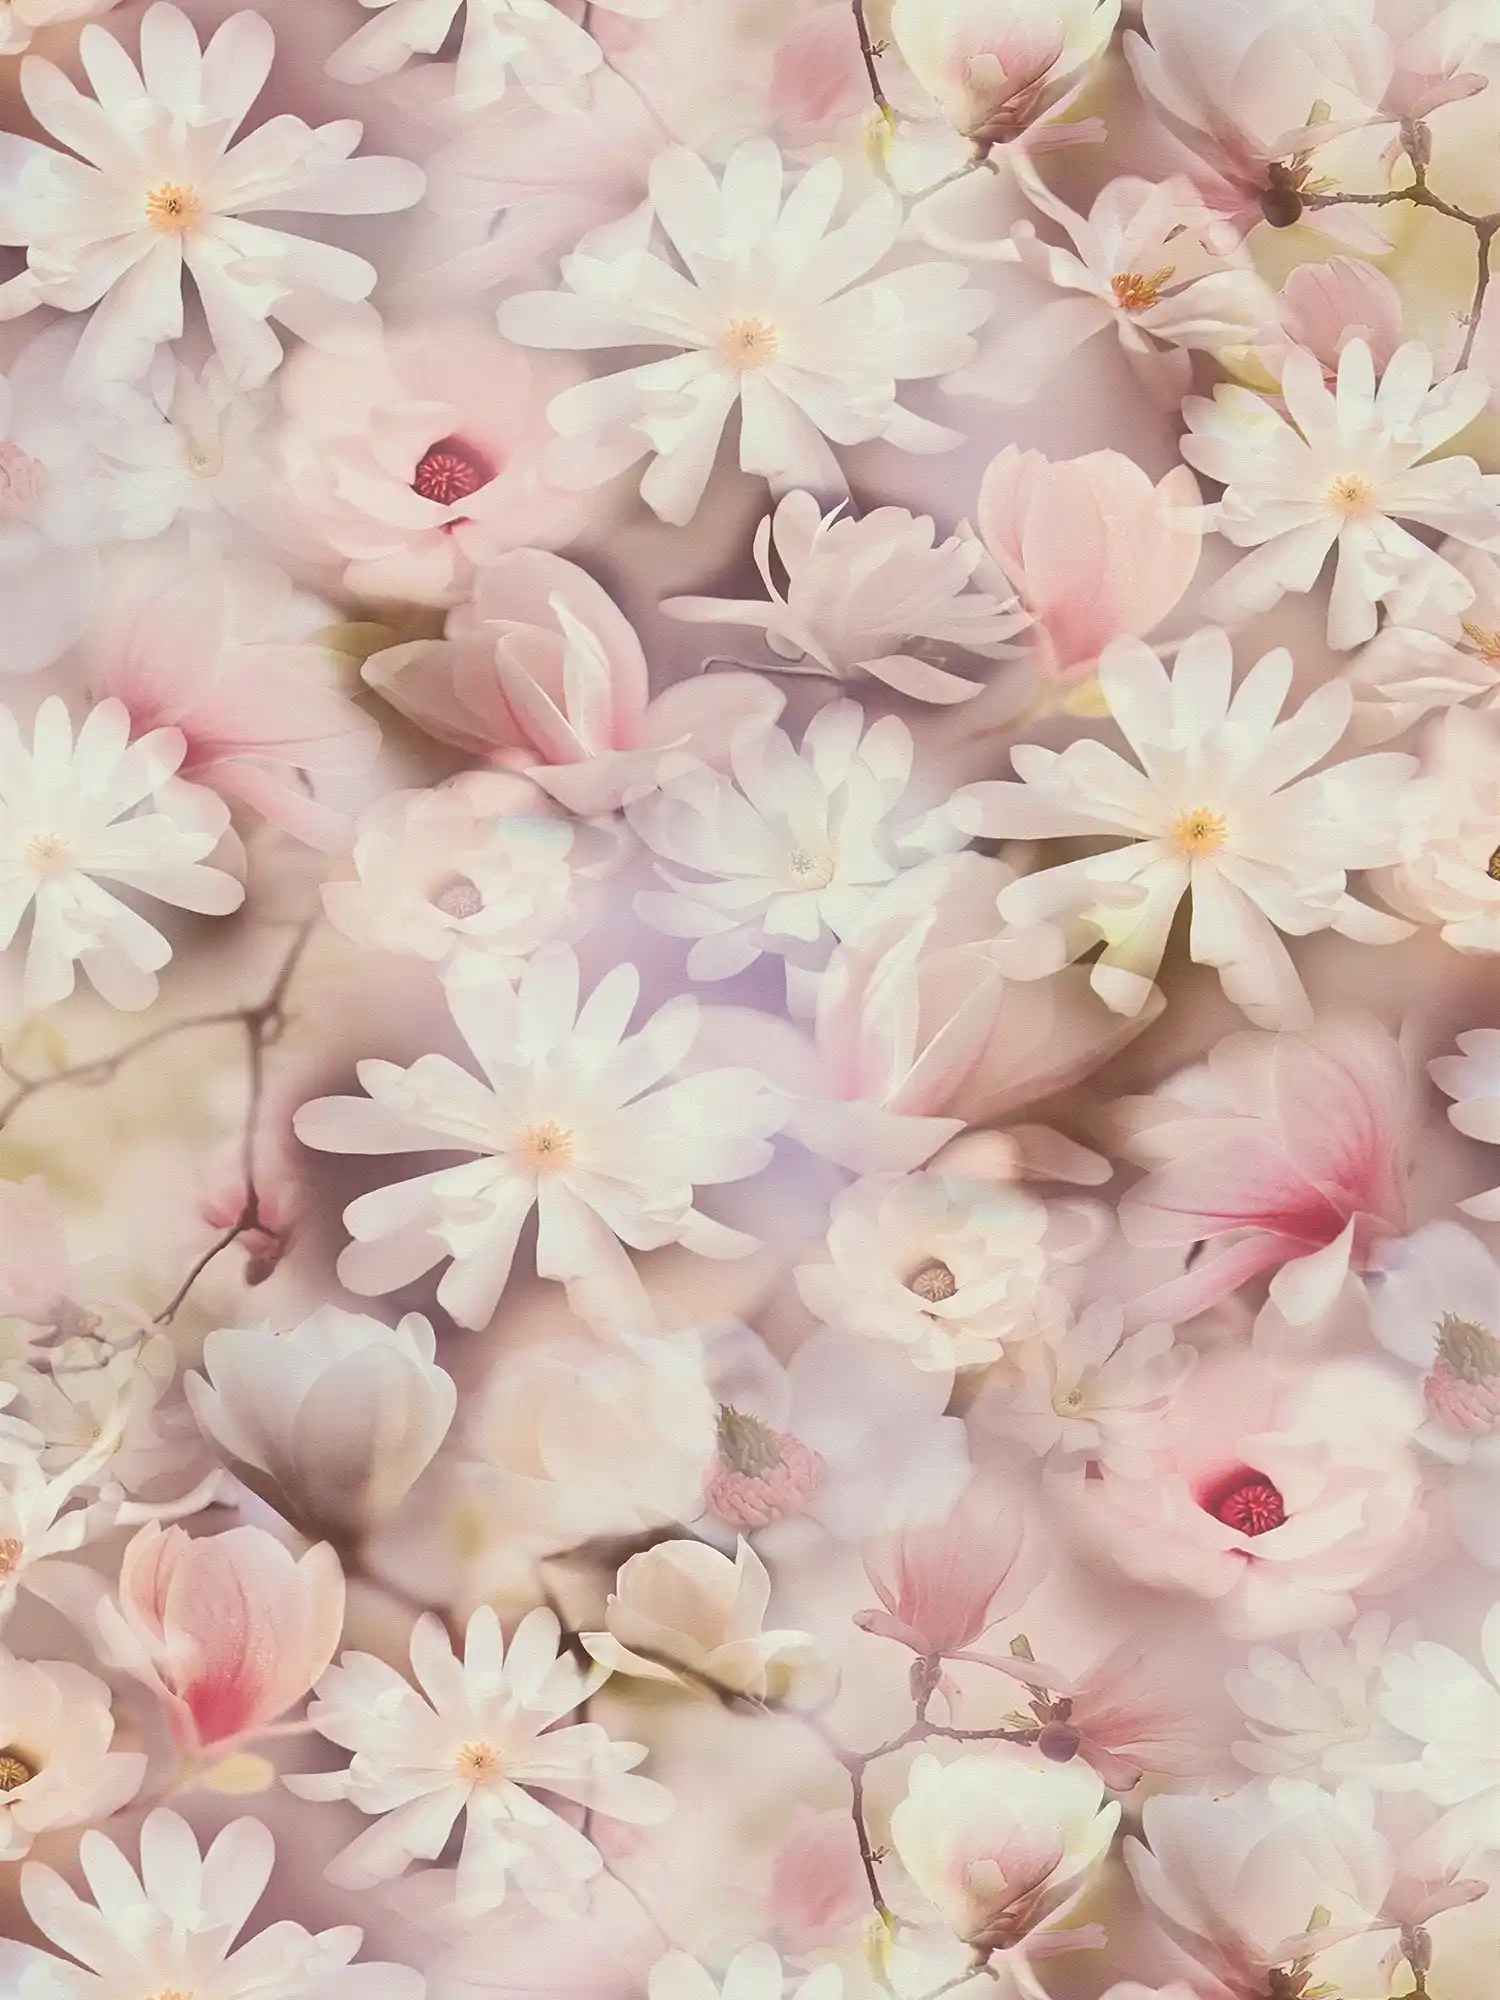 Blumentapete Collage Design in Rosa und Weiß
